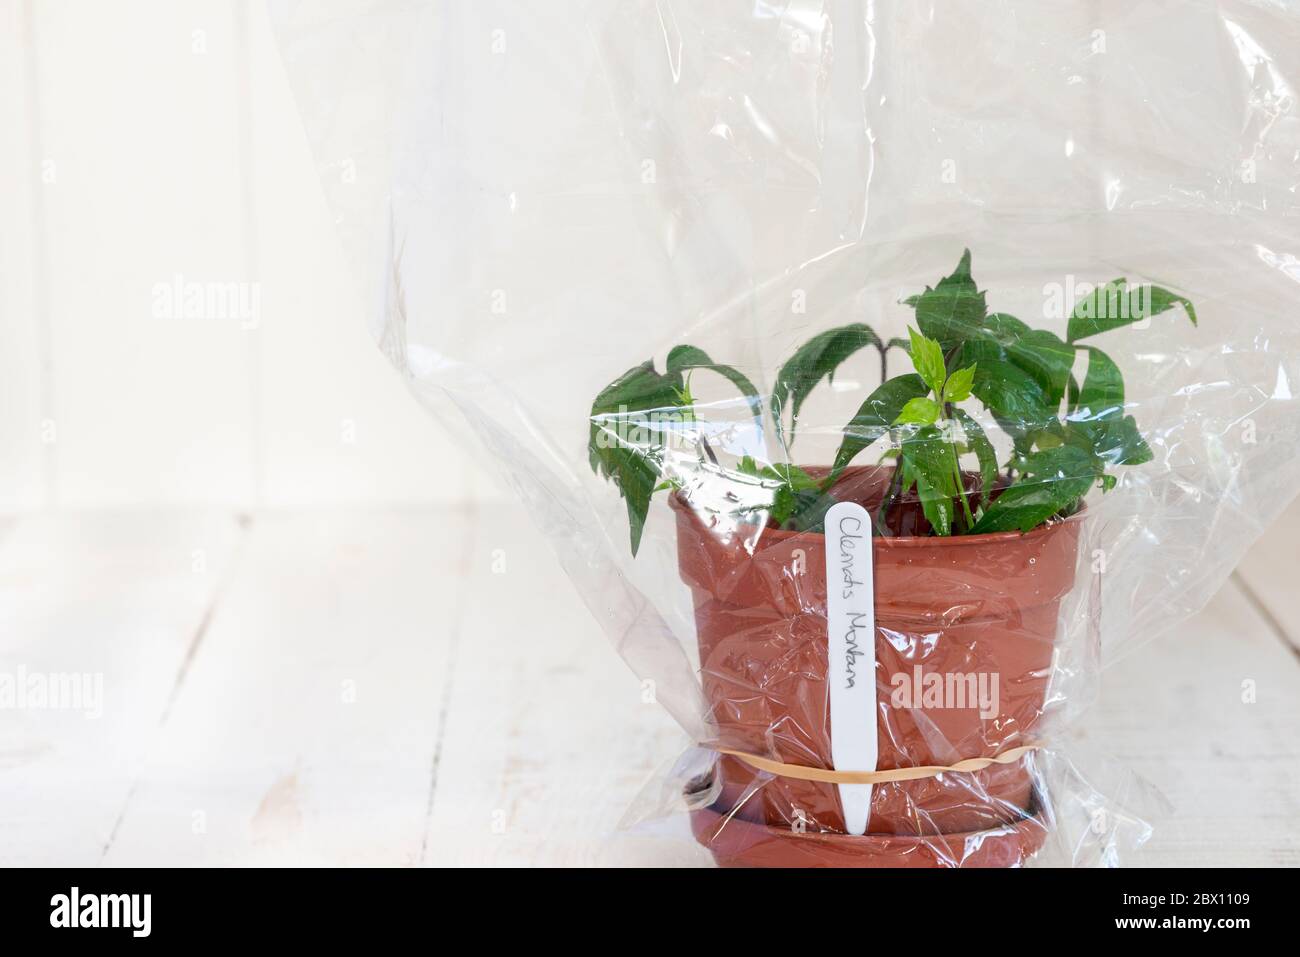 Coltivare nuove piante di Clematis montana da talee - i talee sono tenuti umidi coprendo con un sacchetto di plastica fino a stabilitasi. Foto Stock